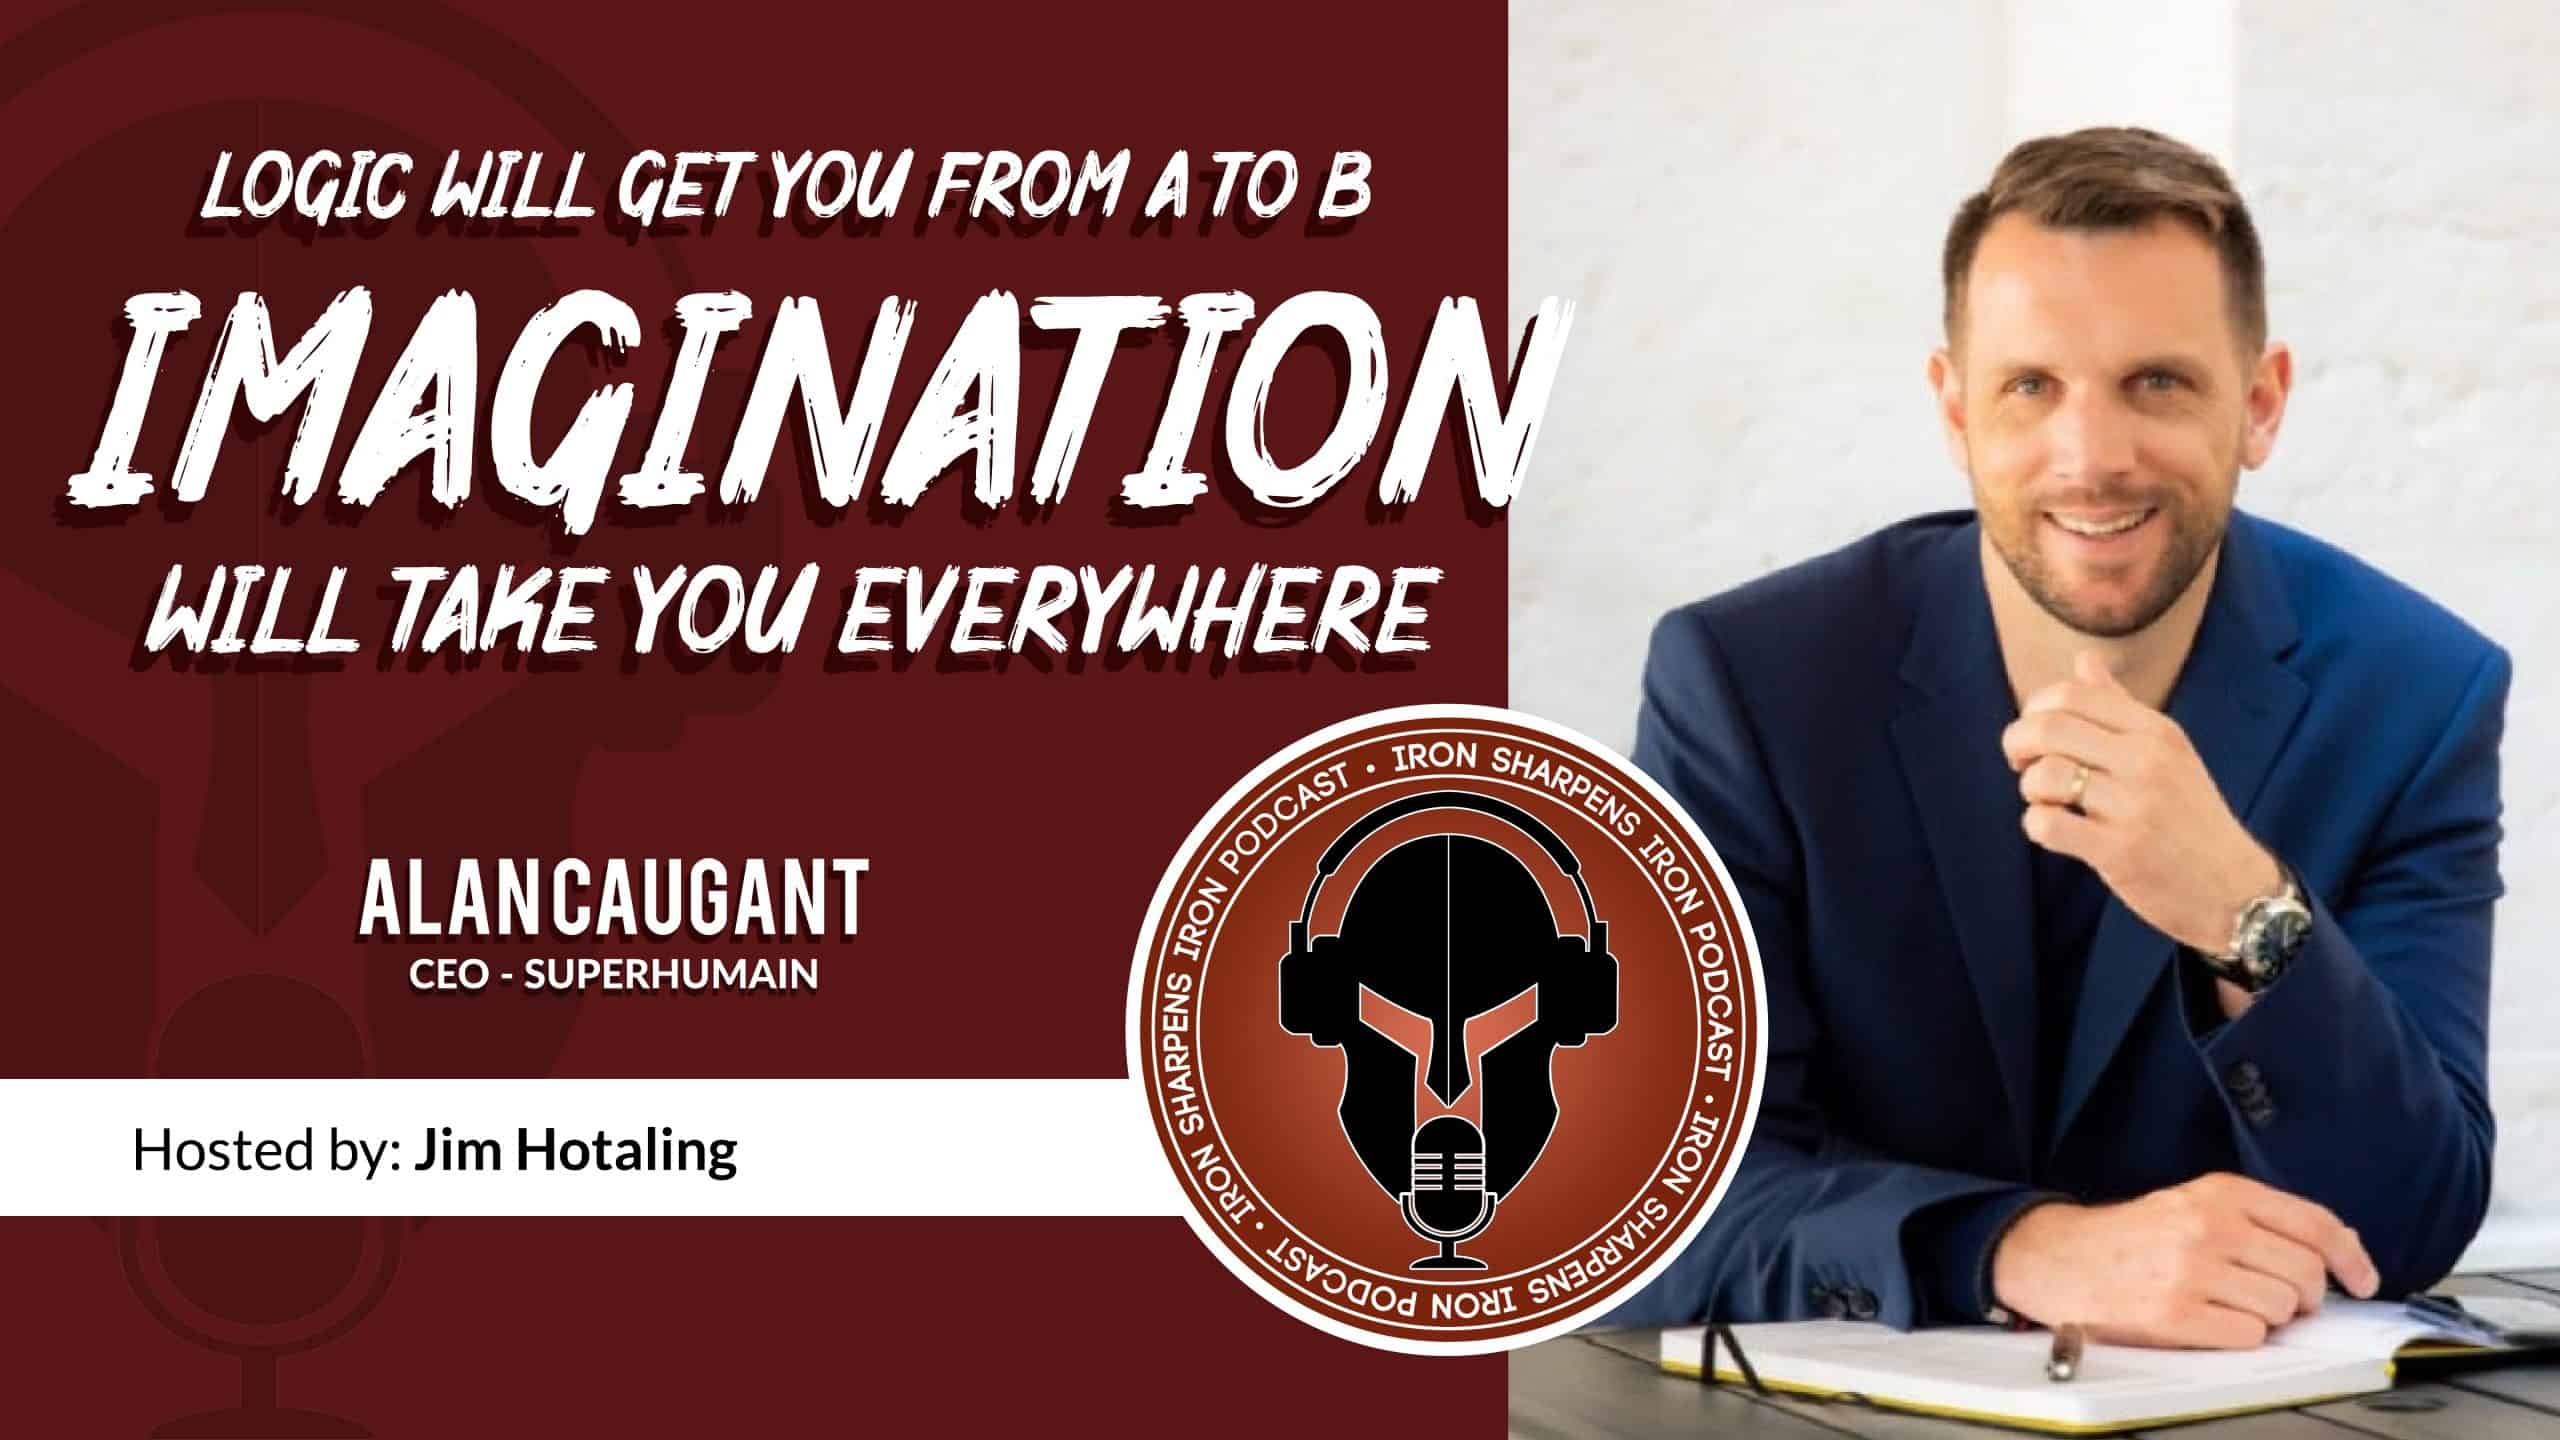 La lógica te llevará de A a B - La imaginación te llevará a todas partes con Alan Caugant